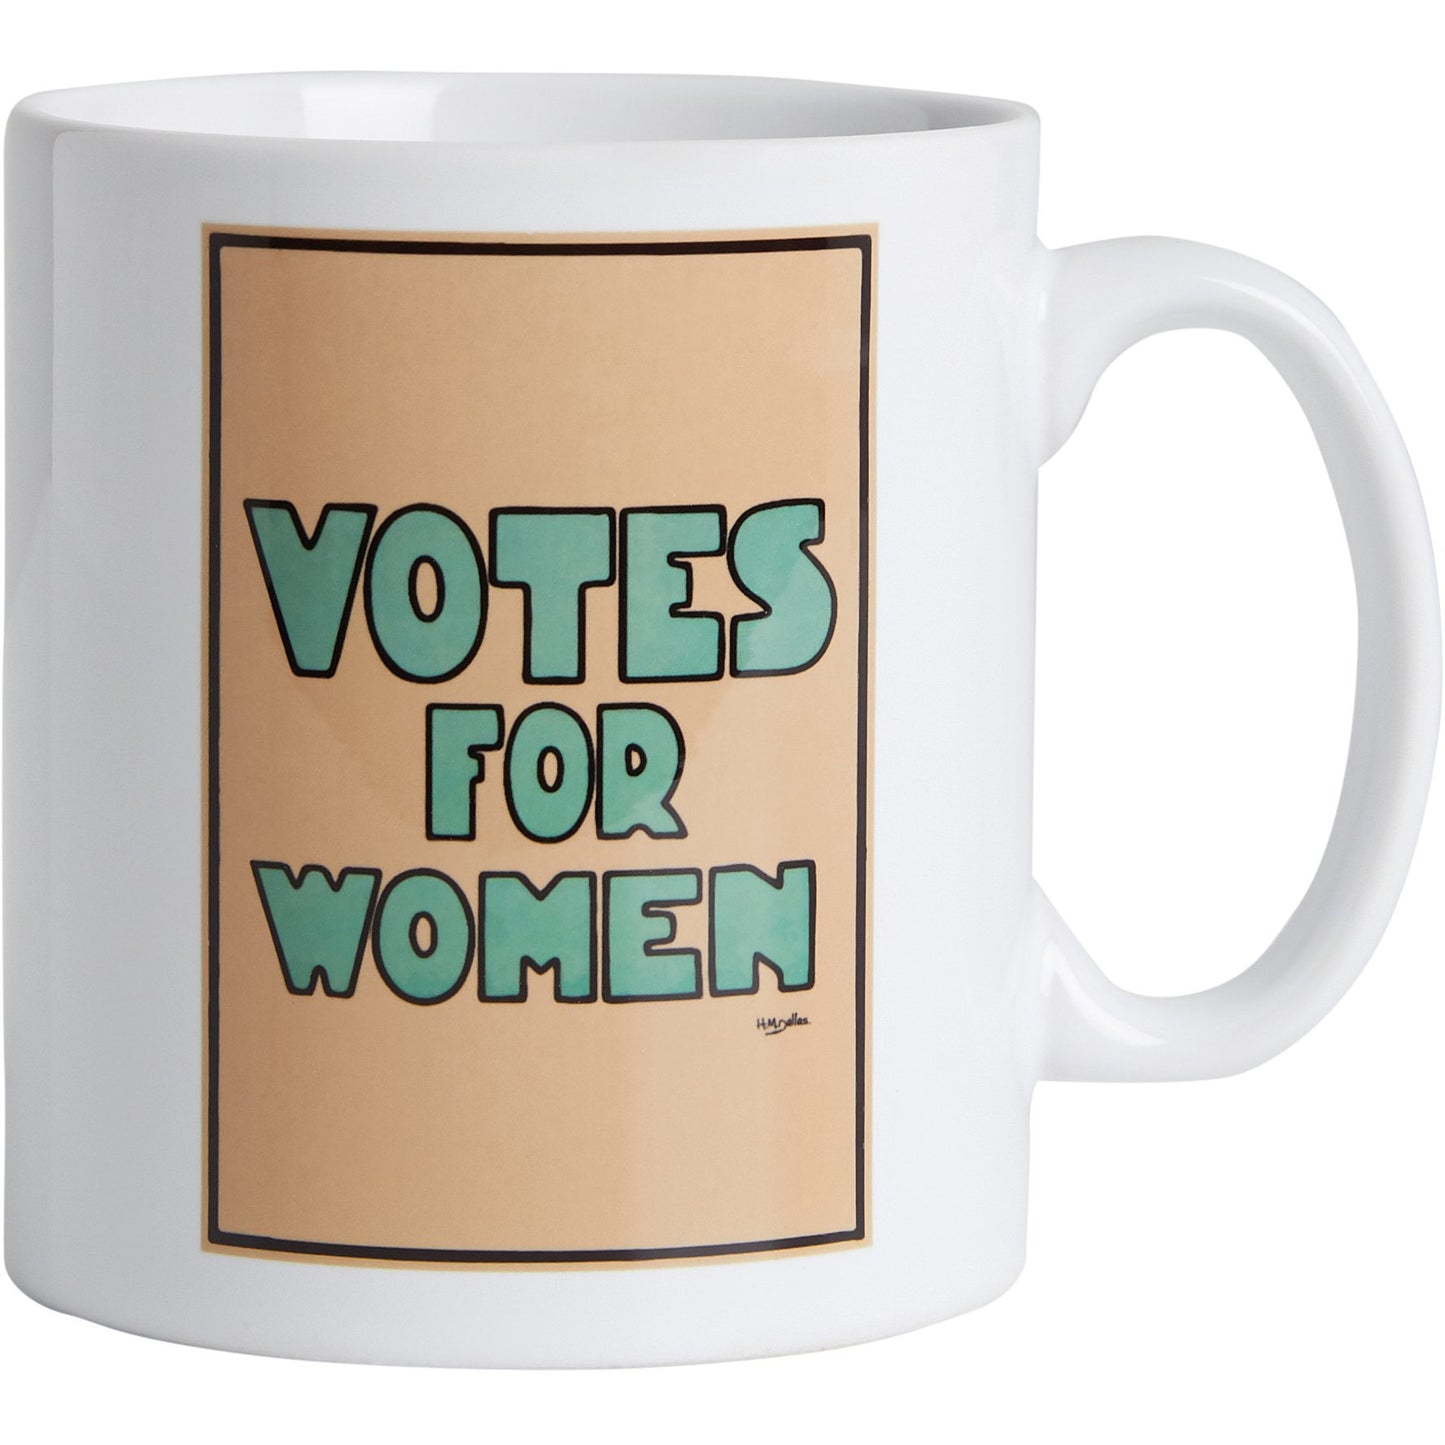 Votes for Women Mug